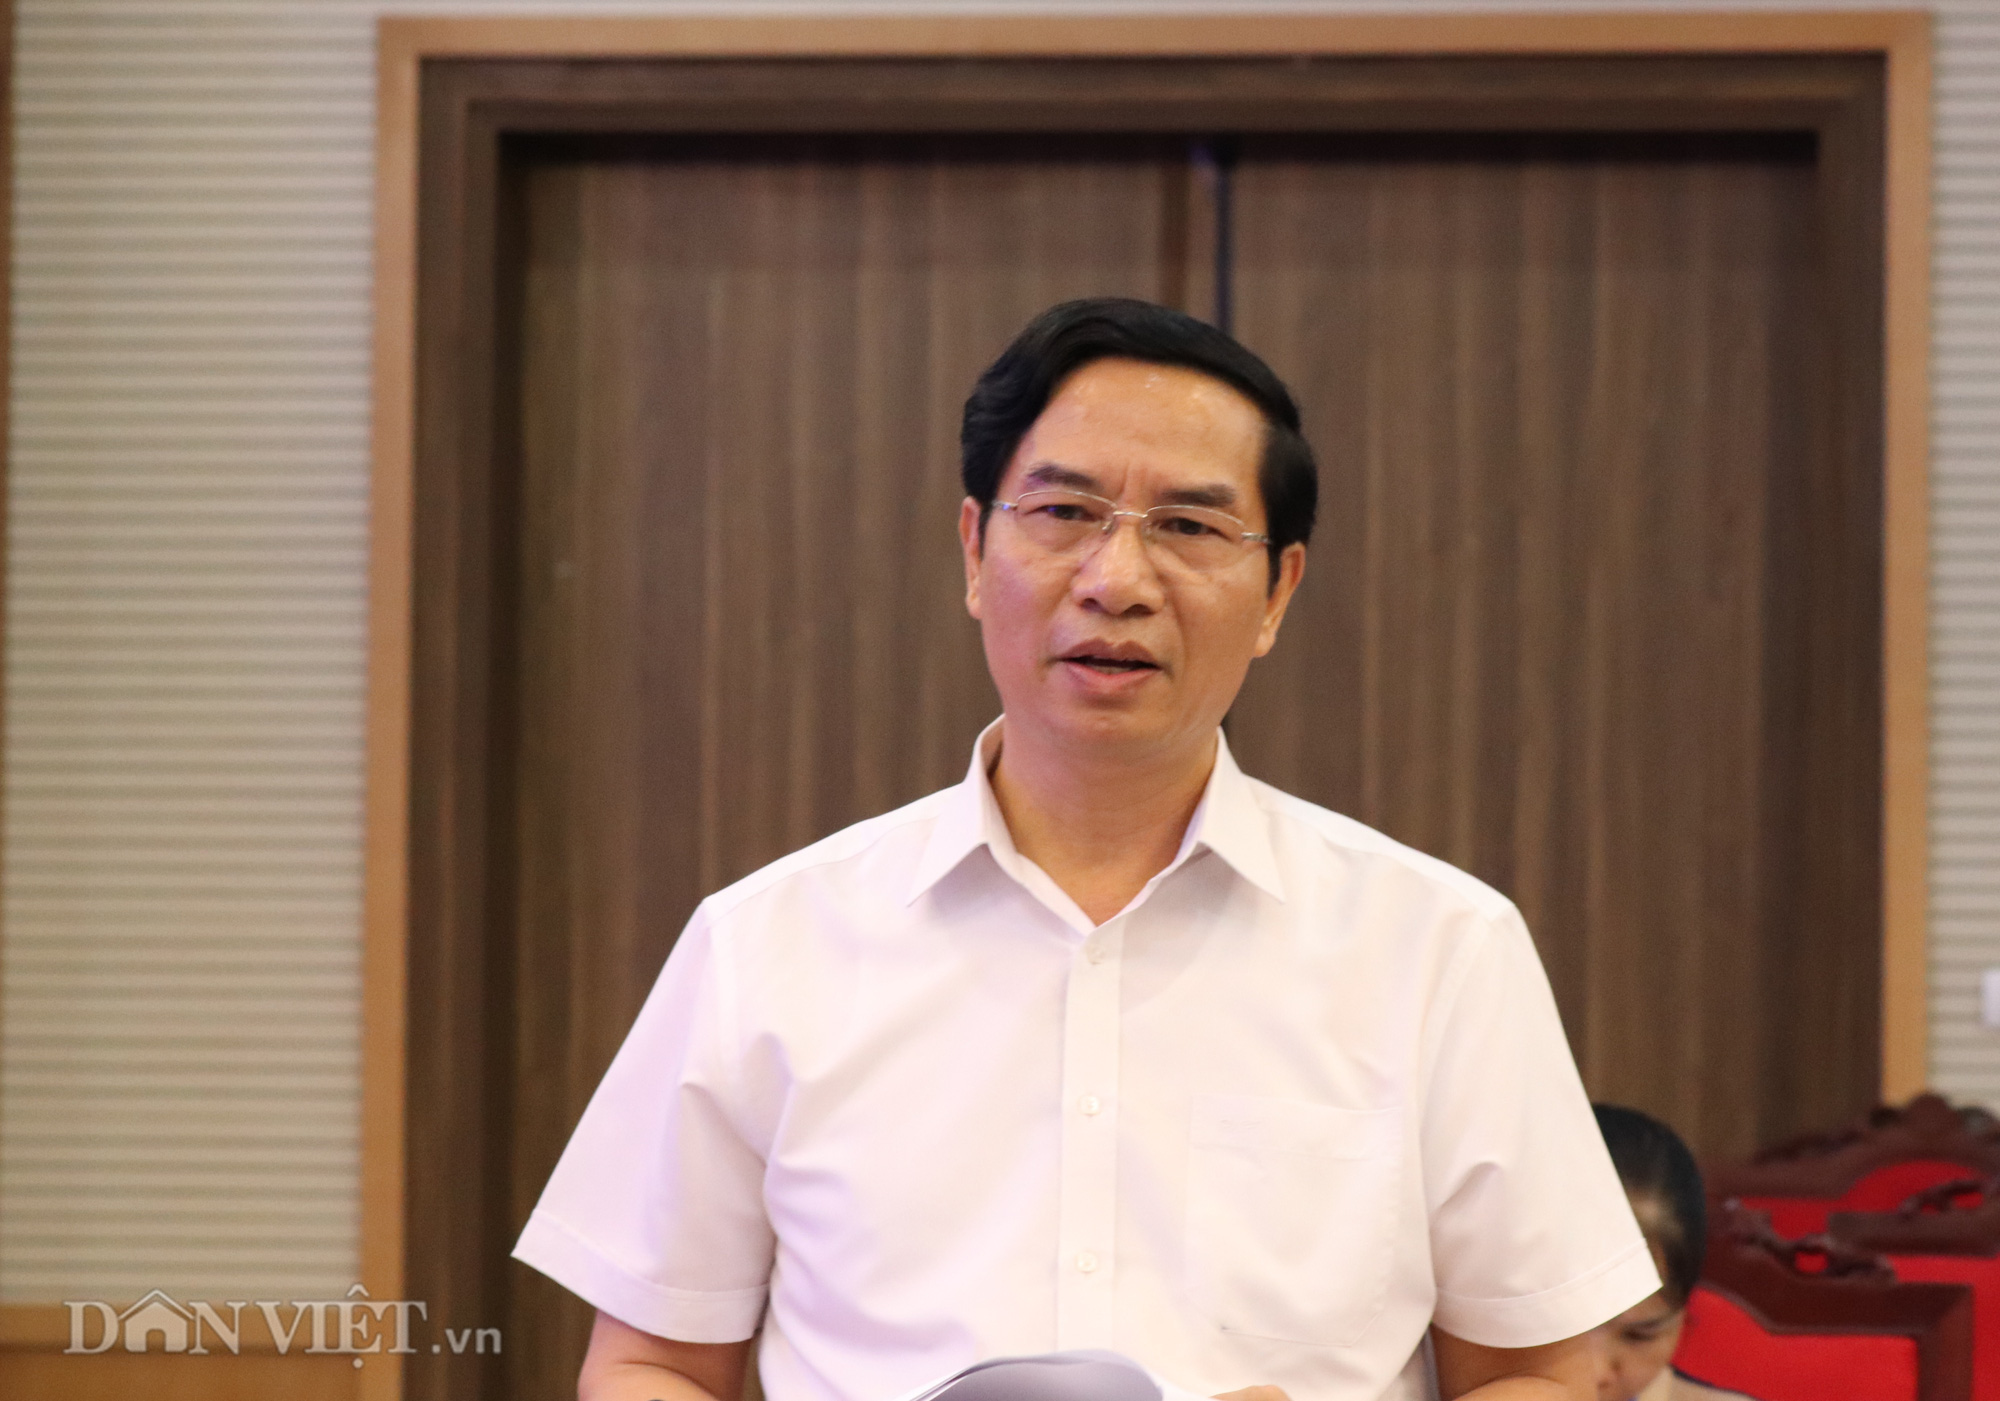 Chủ tịch UBND tỉnh Sơn La: “Kỳ thi năm nay là cơ hội để chúng ta sửa sai” - Ảnh 1.